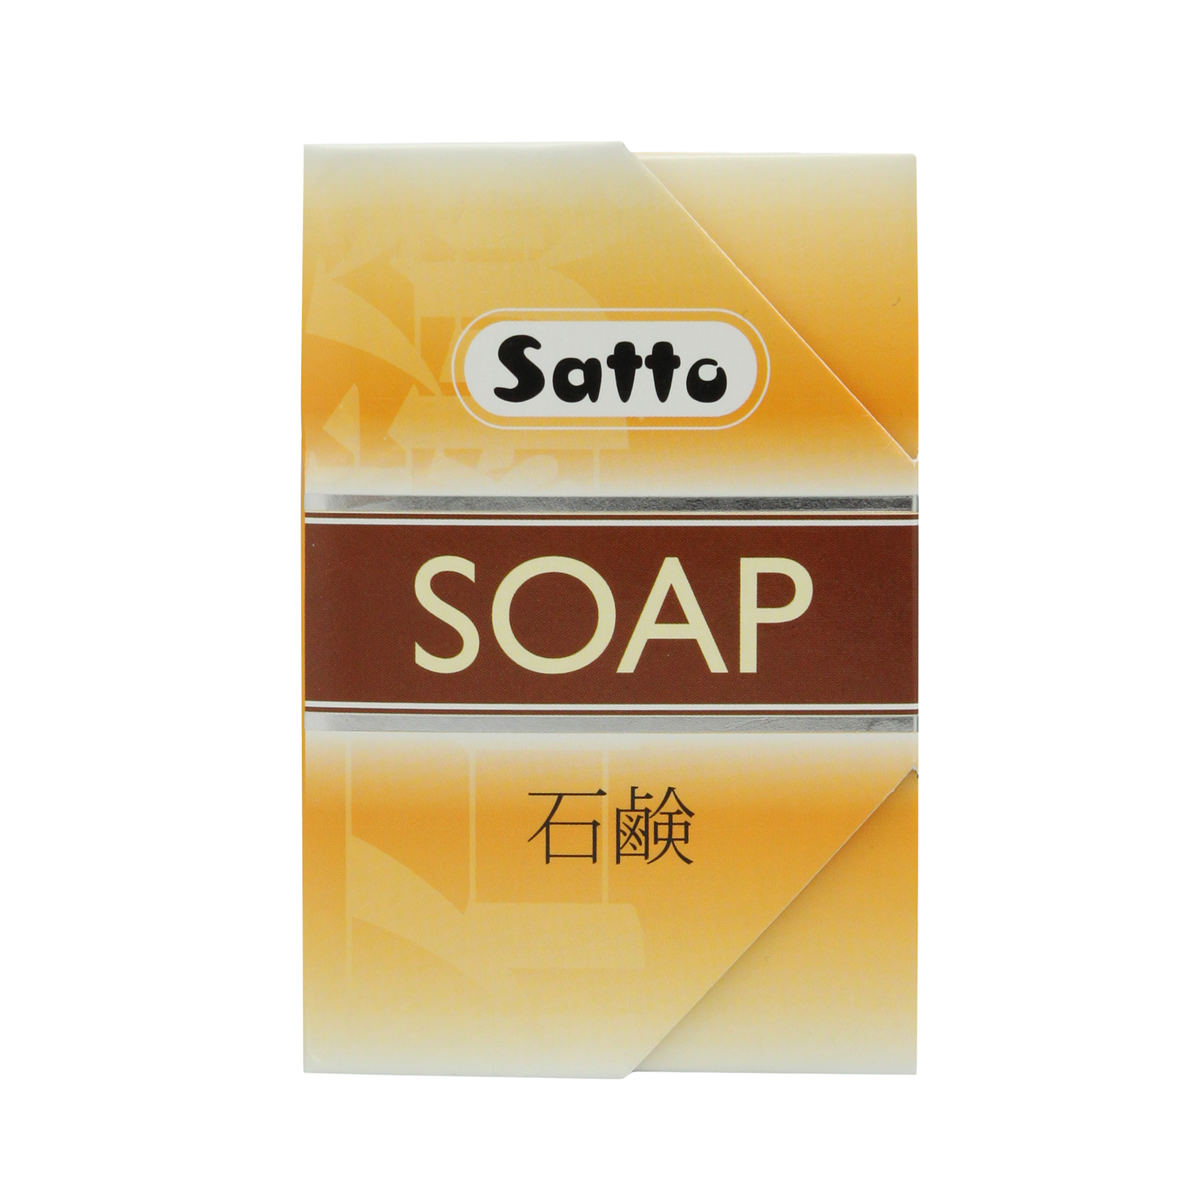 Satto-Soap-high-sfw(1)